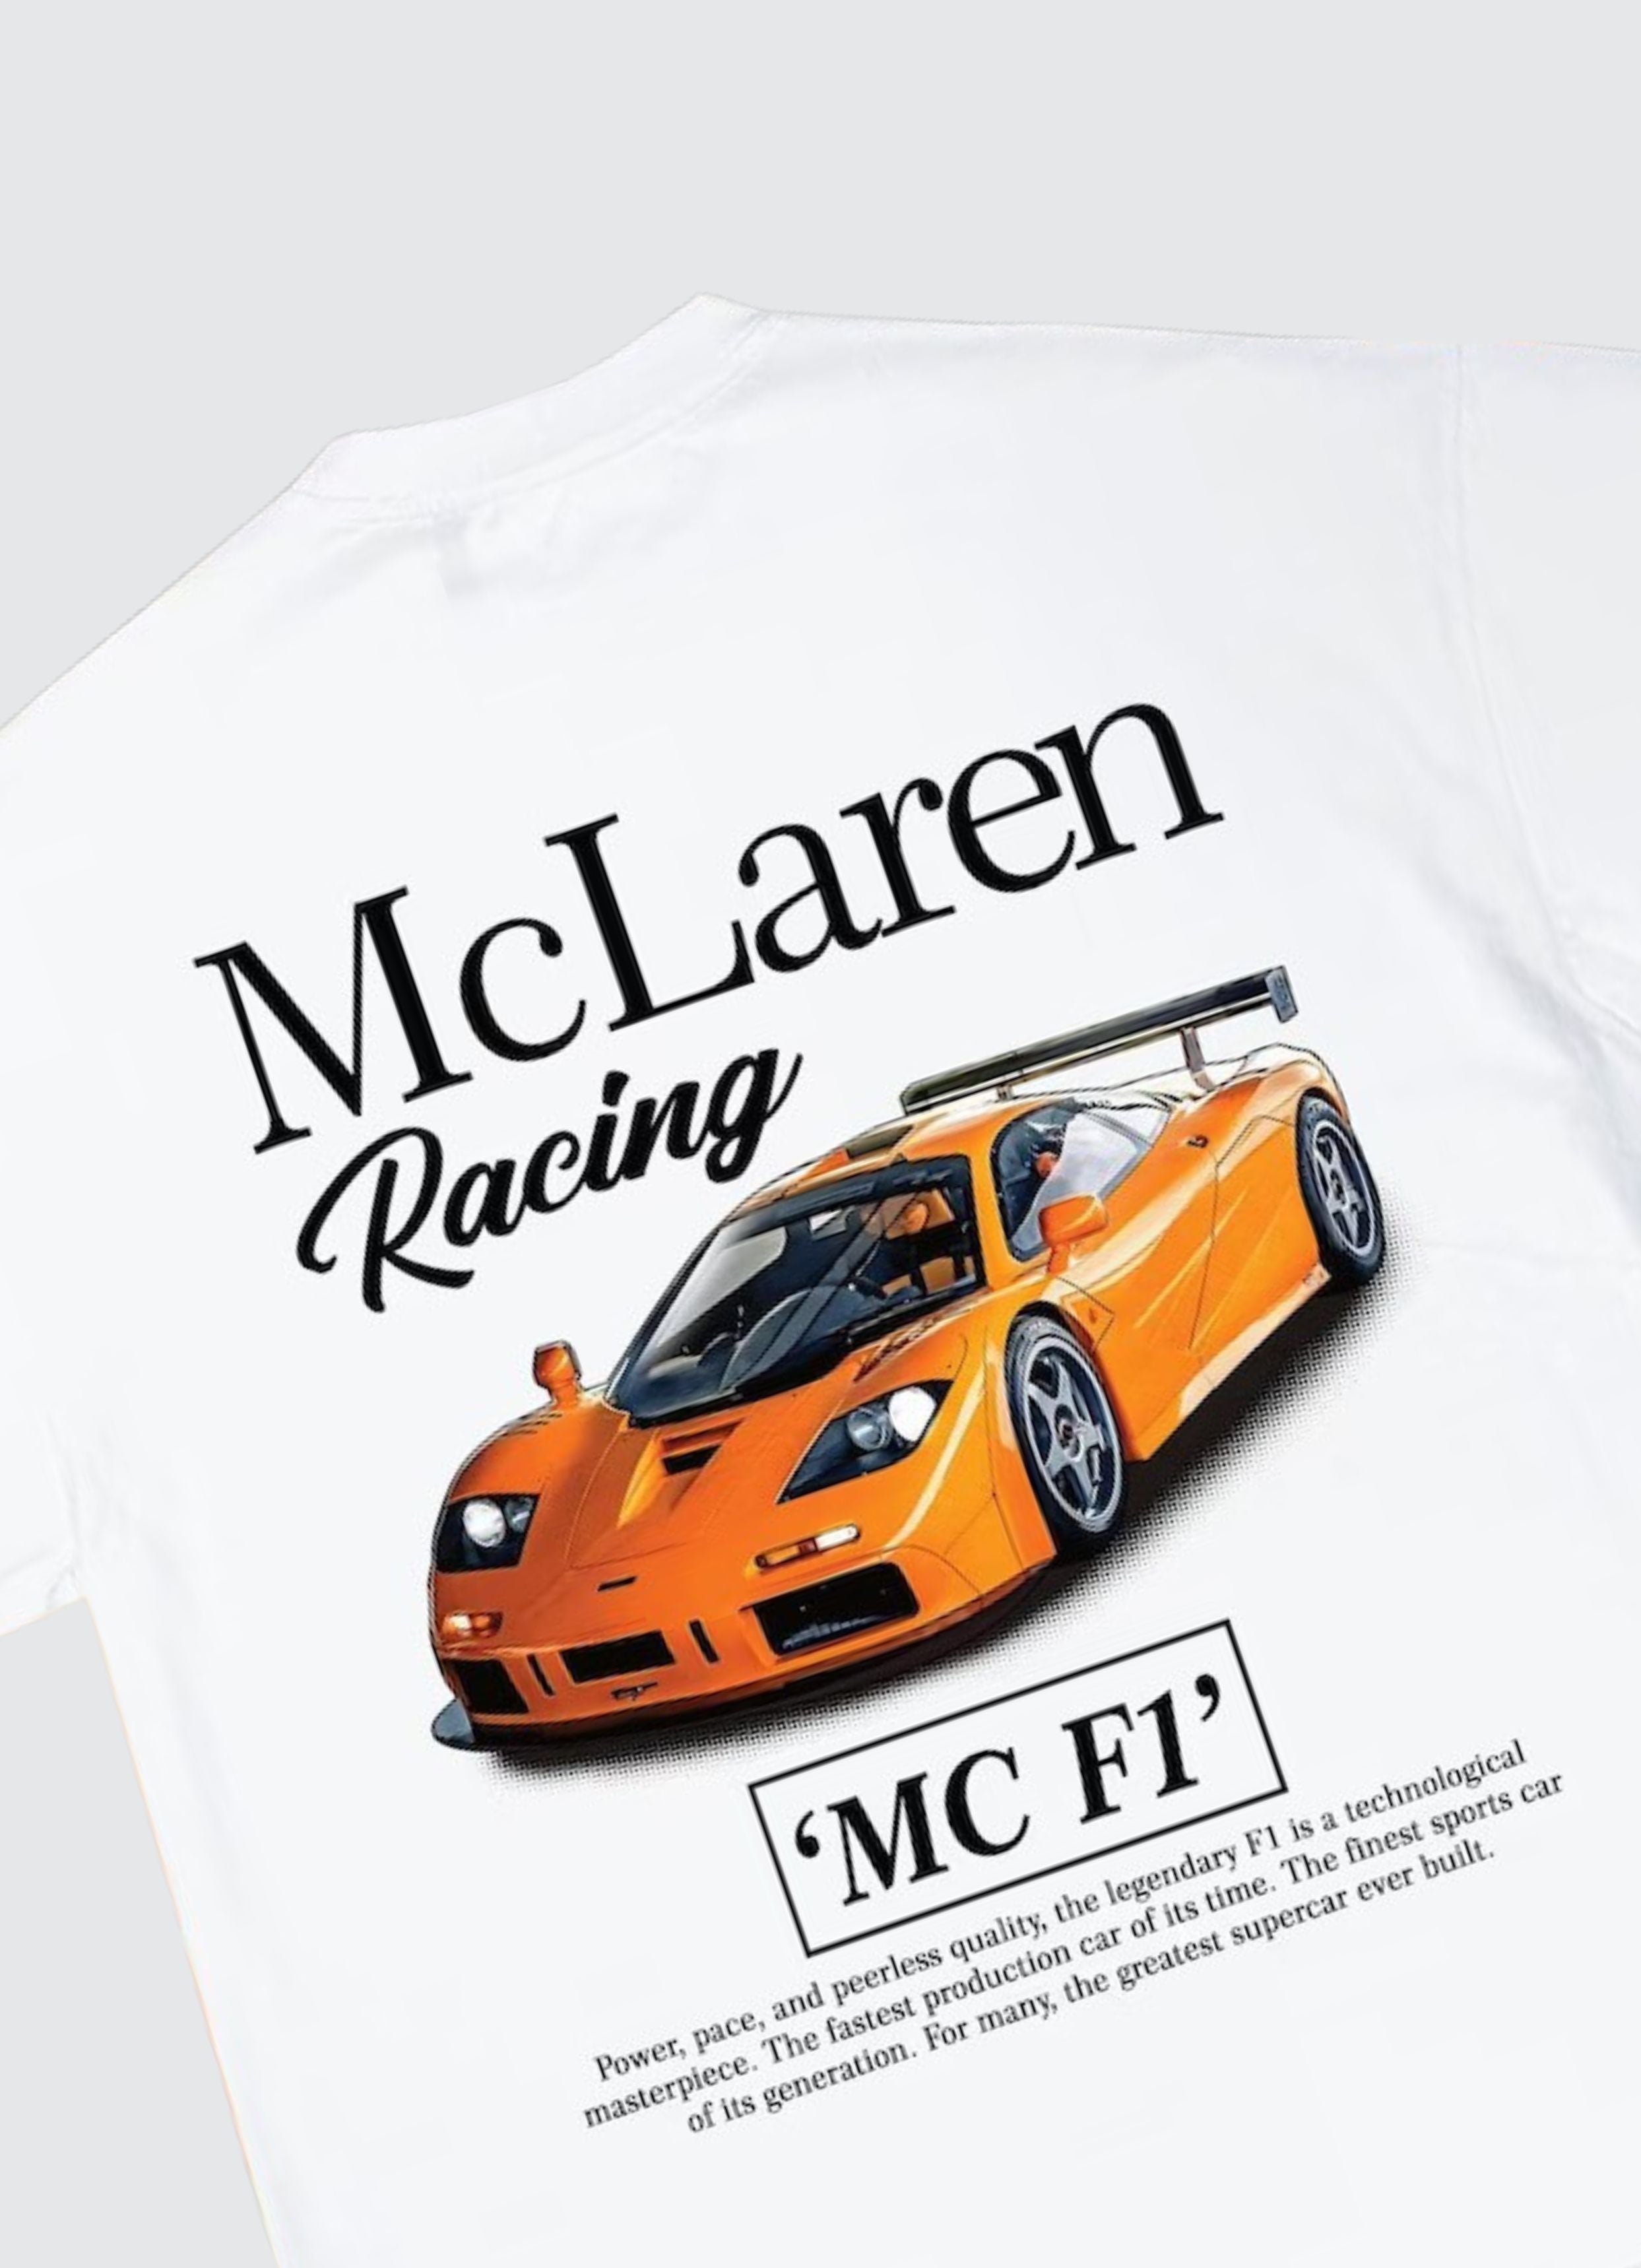 McLaren Oversized Tshirt